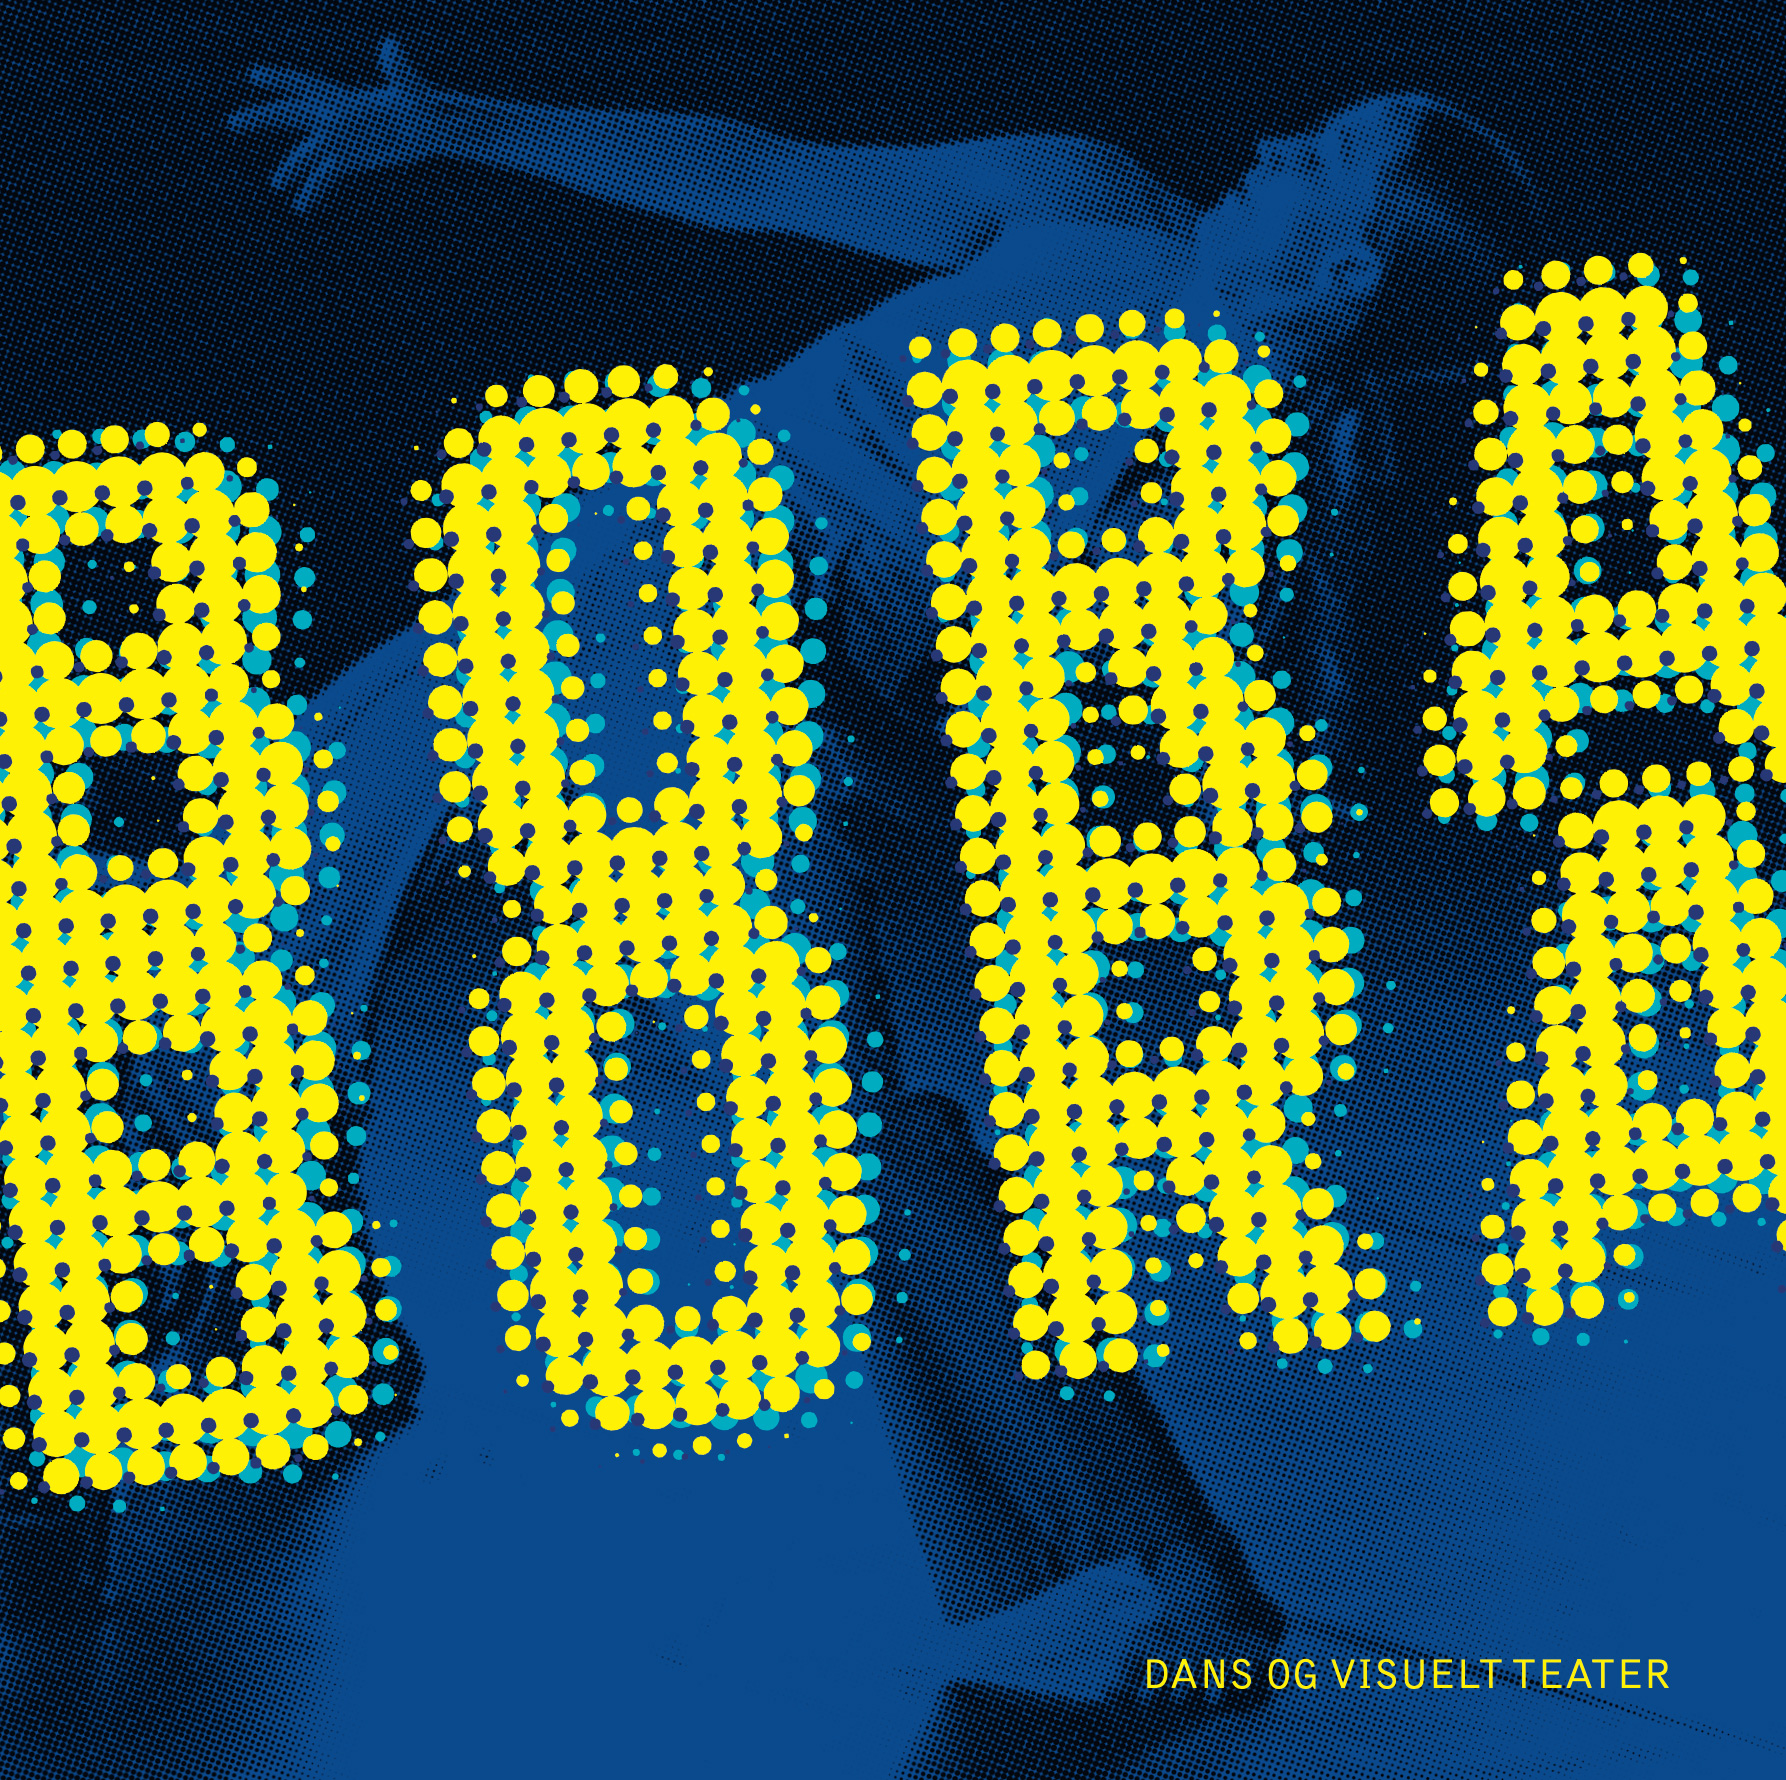 Læs Bora Boras historie